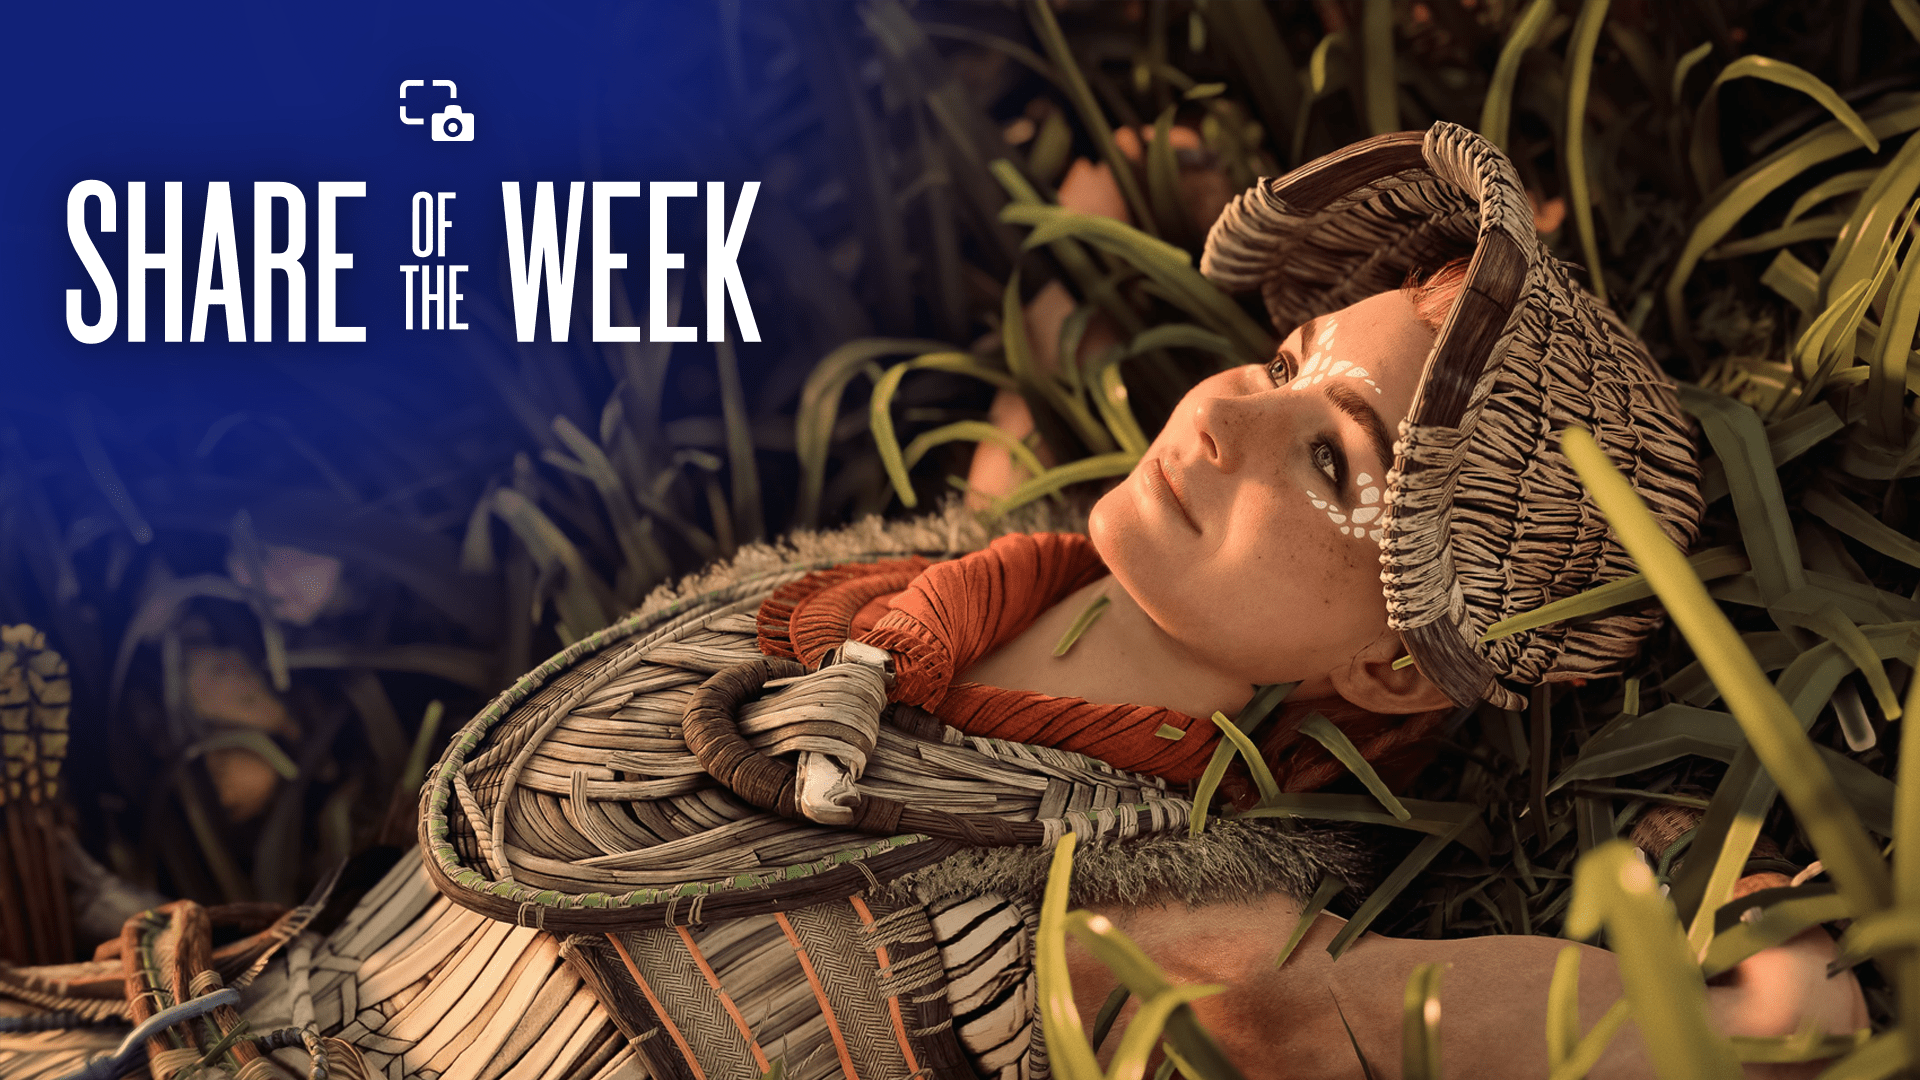 سهم هفته: استراحت – PlayStation.Blog